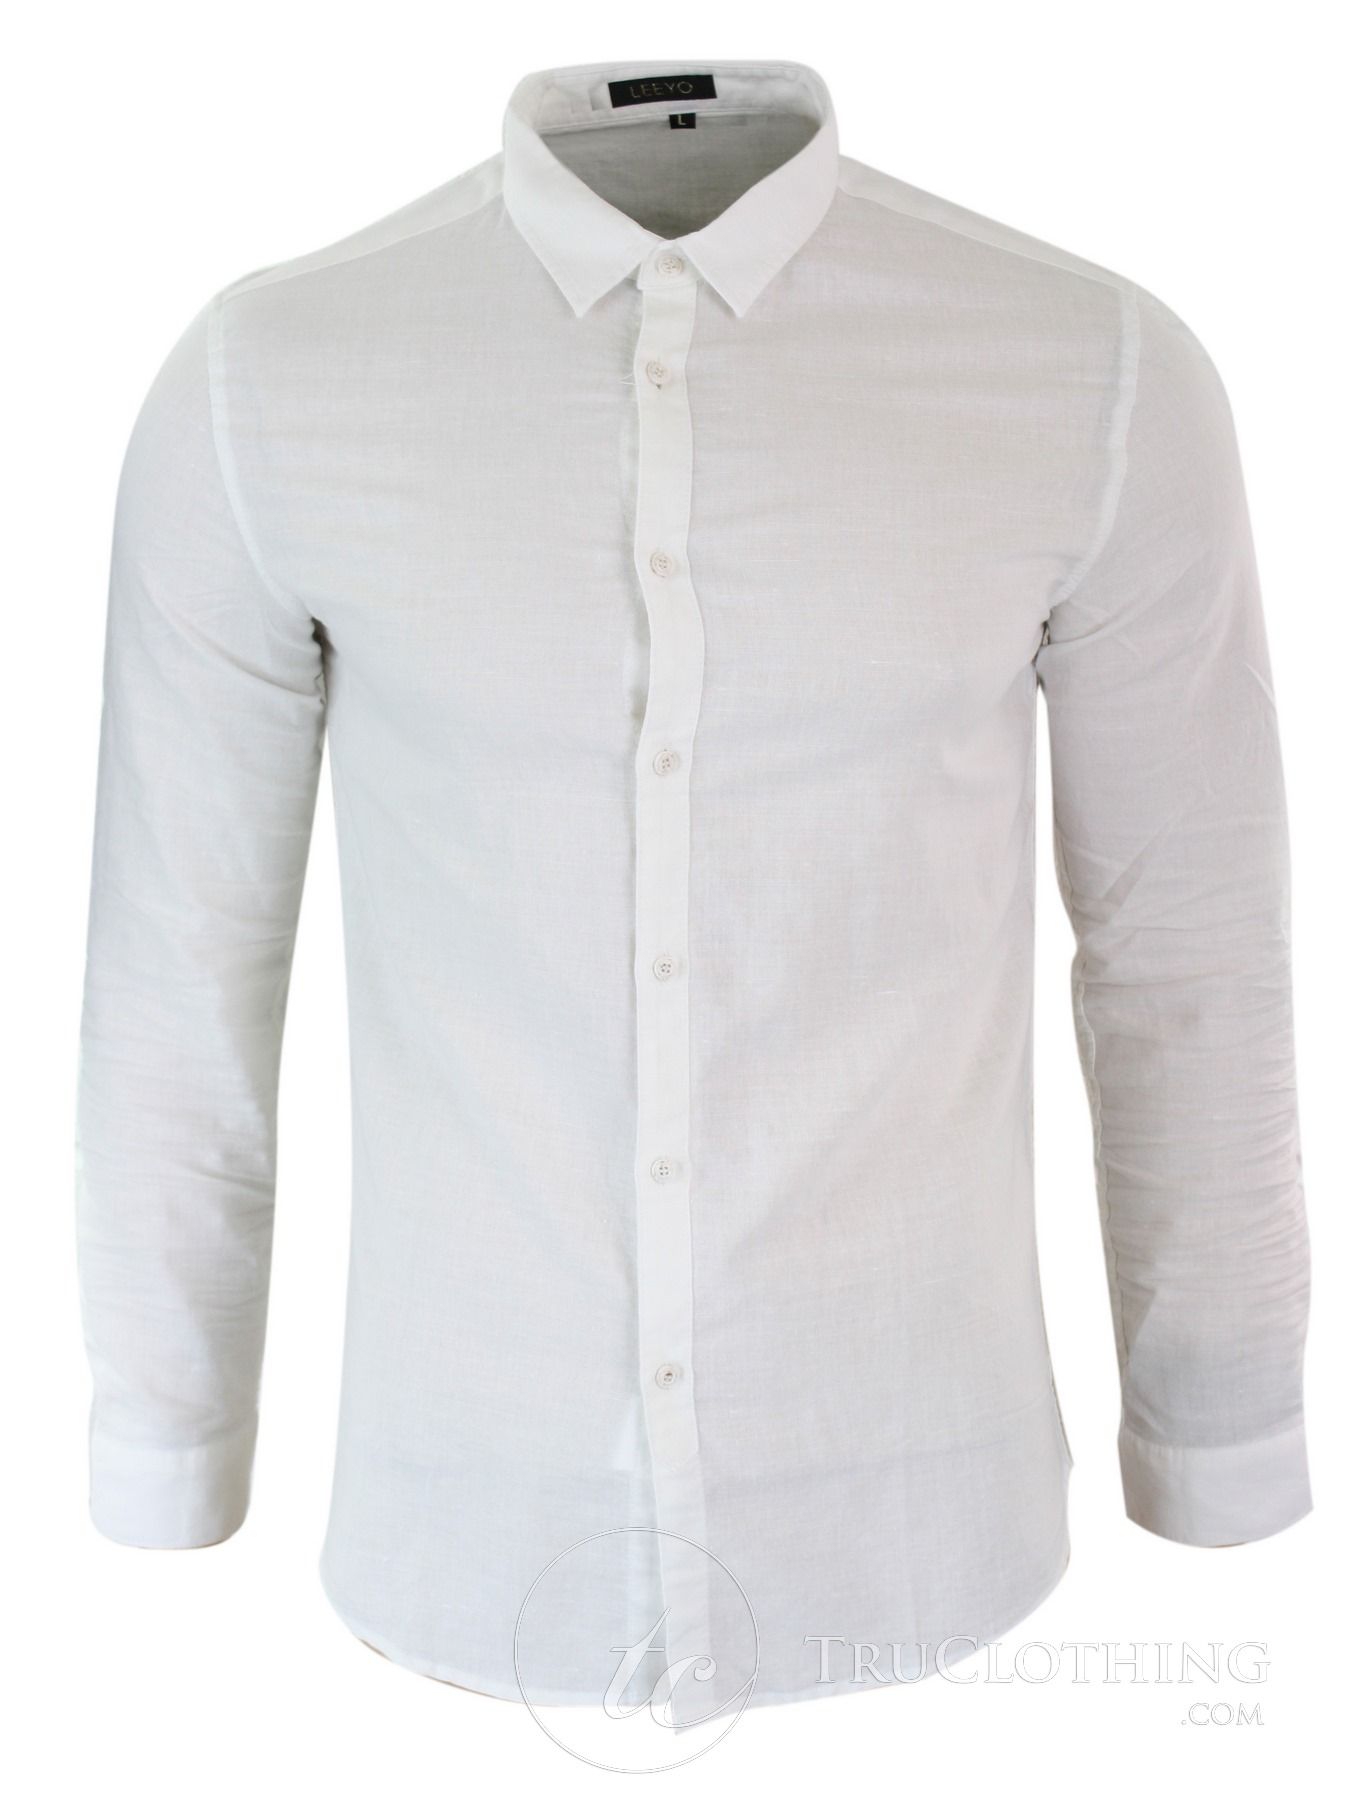 Z301 - Mens Summer Holiday Linen Collar Shirt Button Beach Light Slim ...